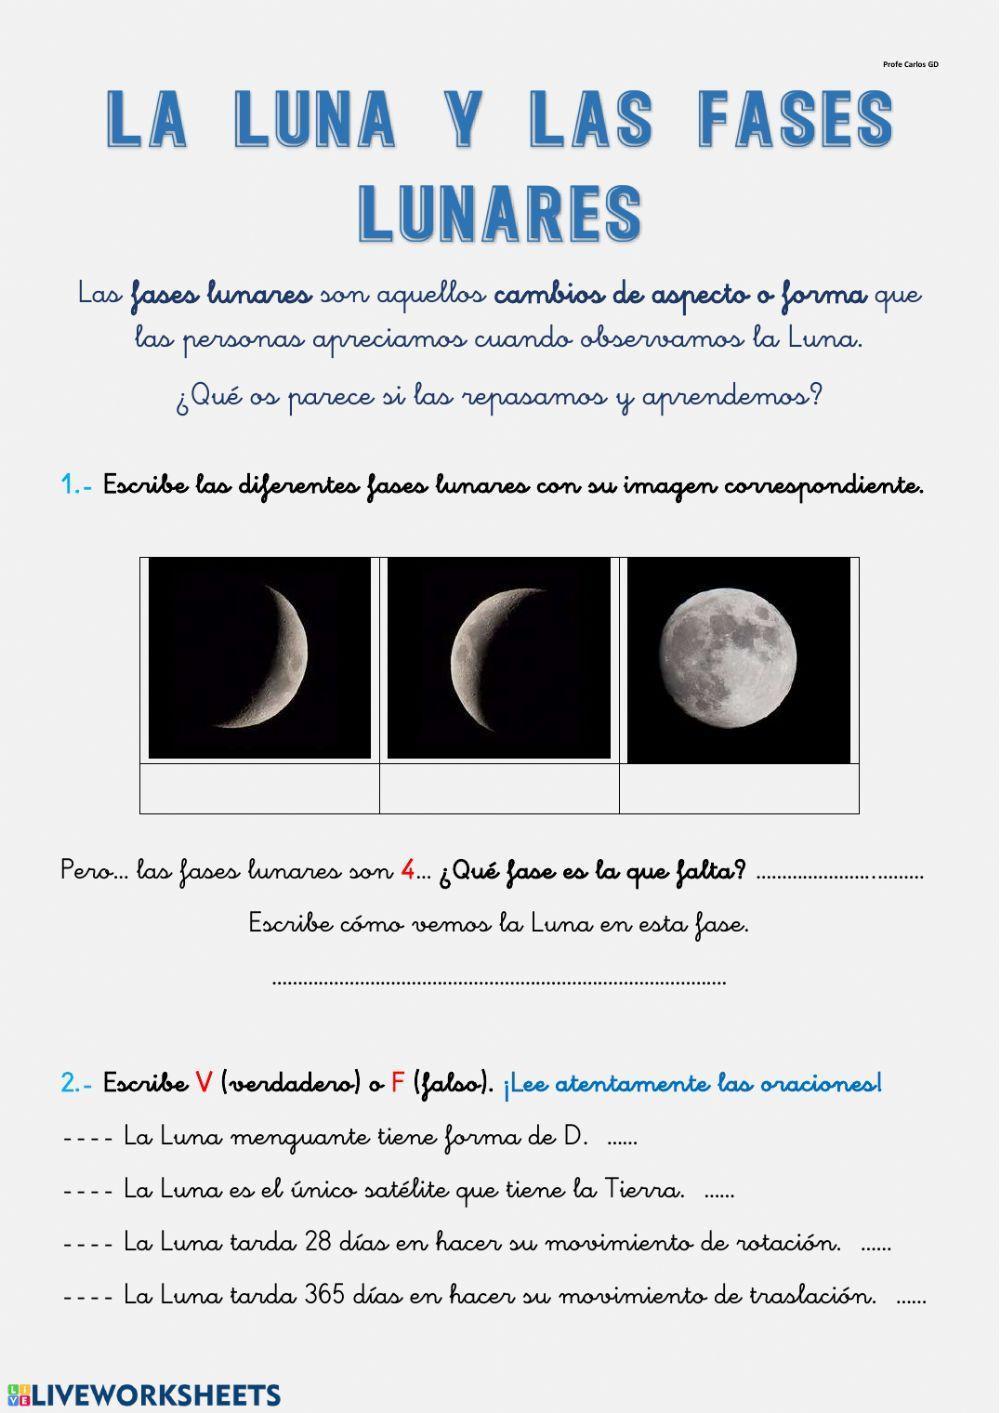 Las fases lunares